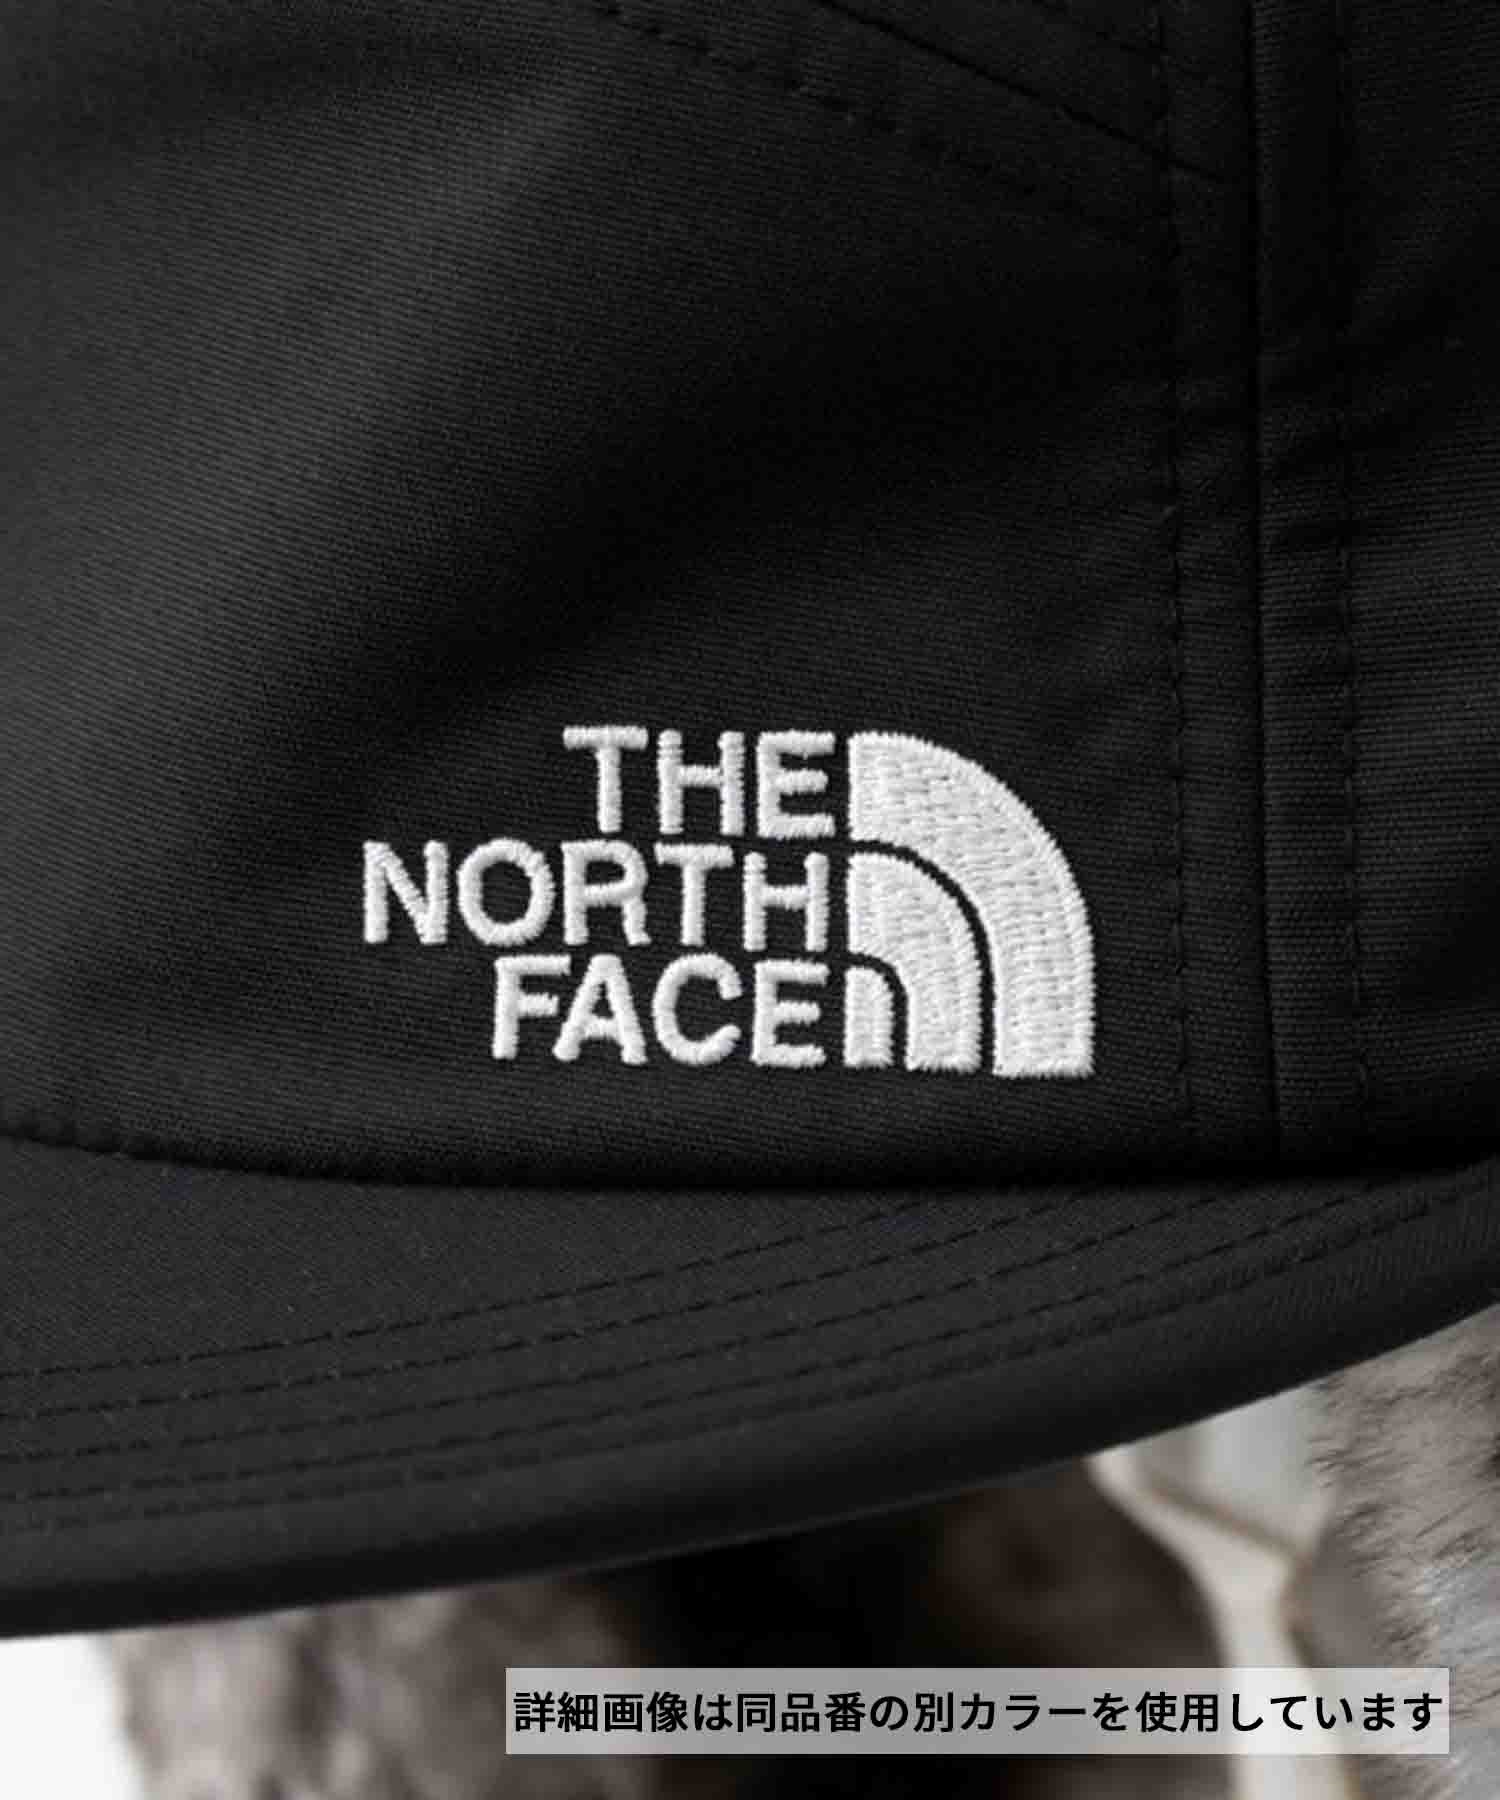 THE NORTH FACE/ザ・ノース・フェイス キャップ 防寒 保温 バッド 